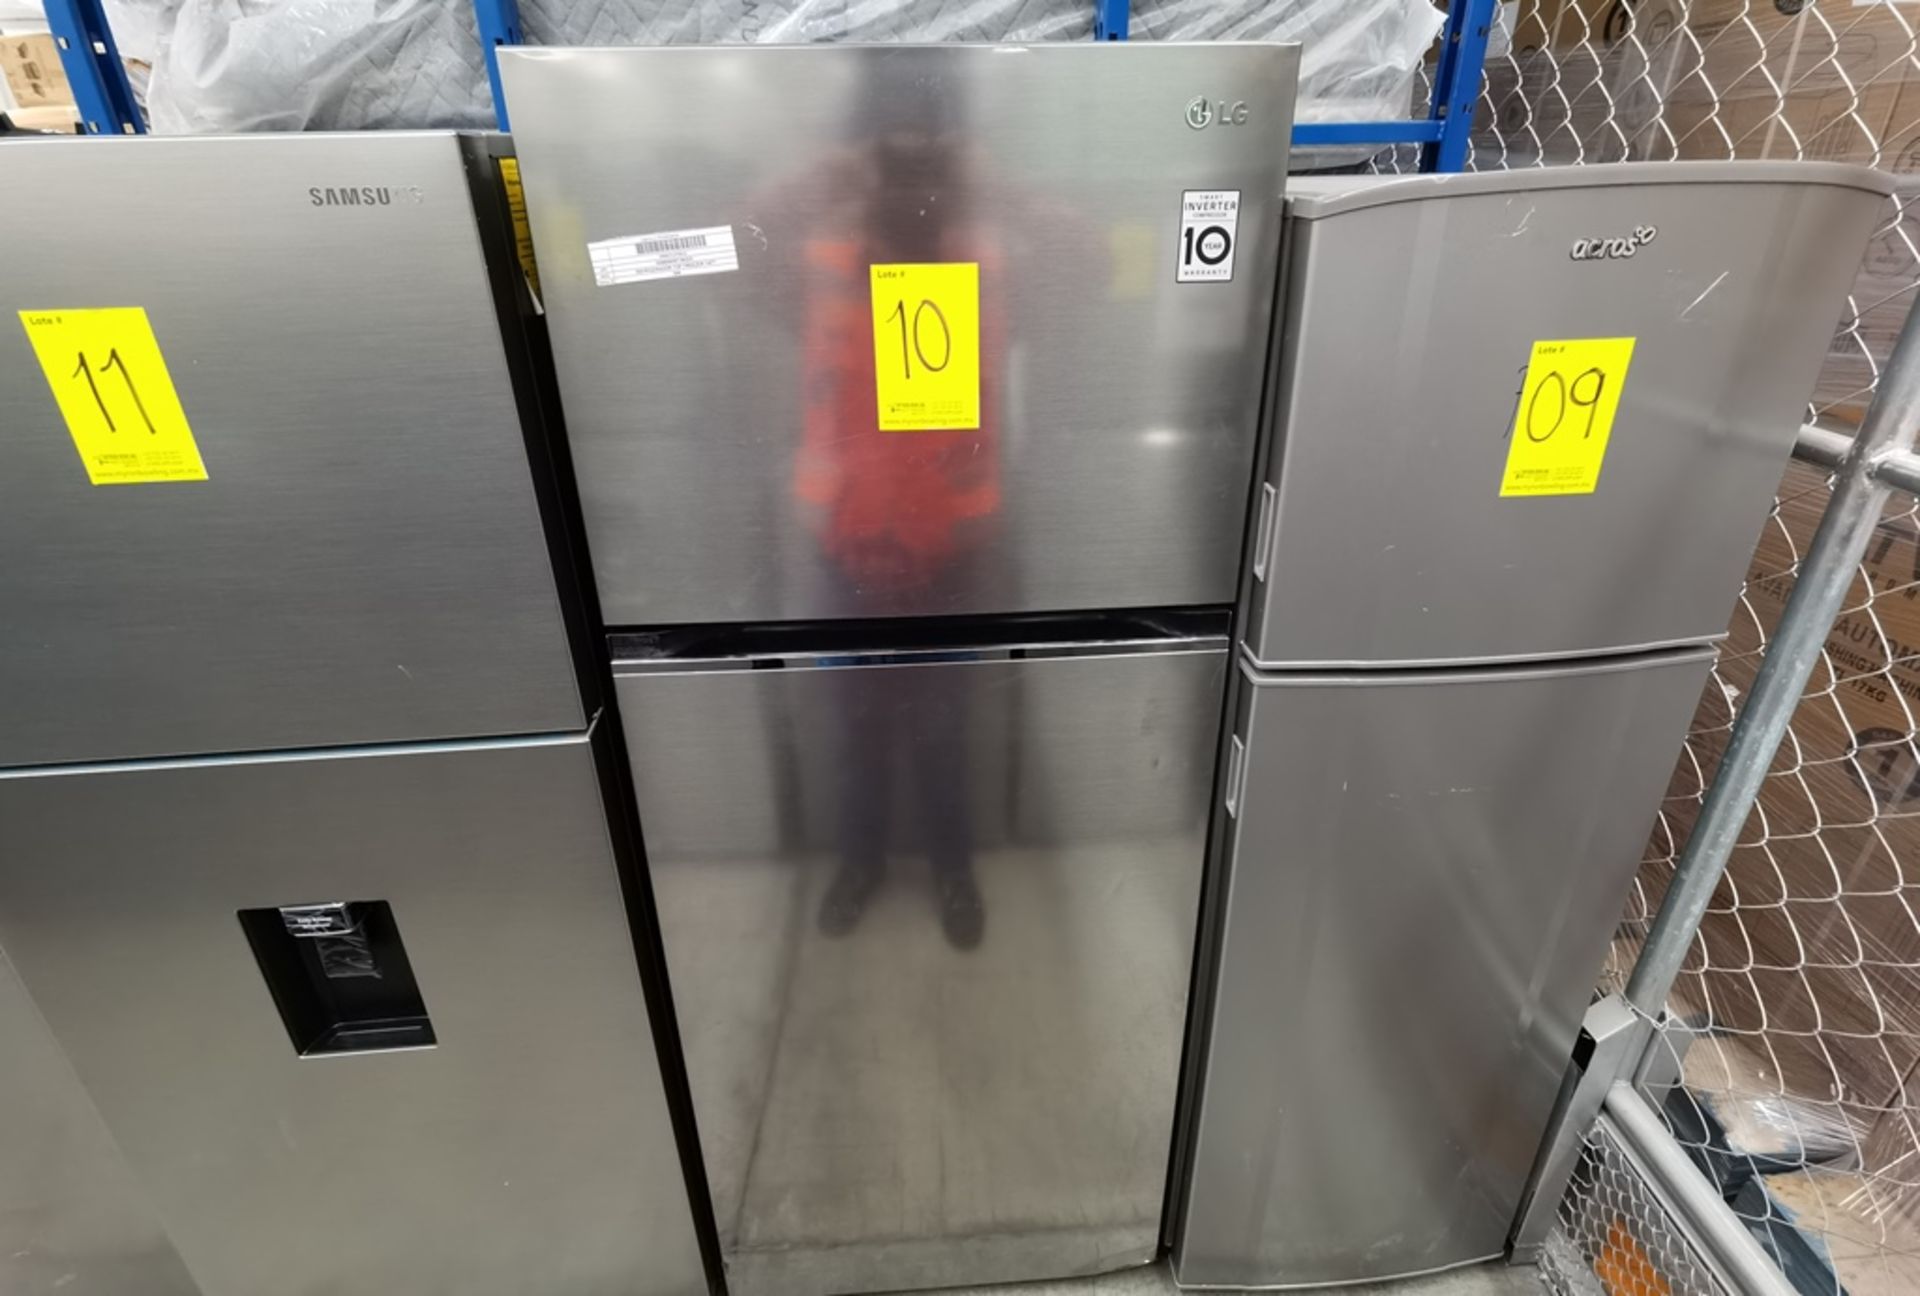 Lote De 2 Refrigeradores Contiene: 1 Refrigerador Marca LG, Modelo VT40BP, Serie 112MRTT1R457, Colo - Image 6 of 14